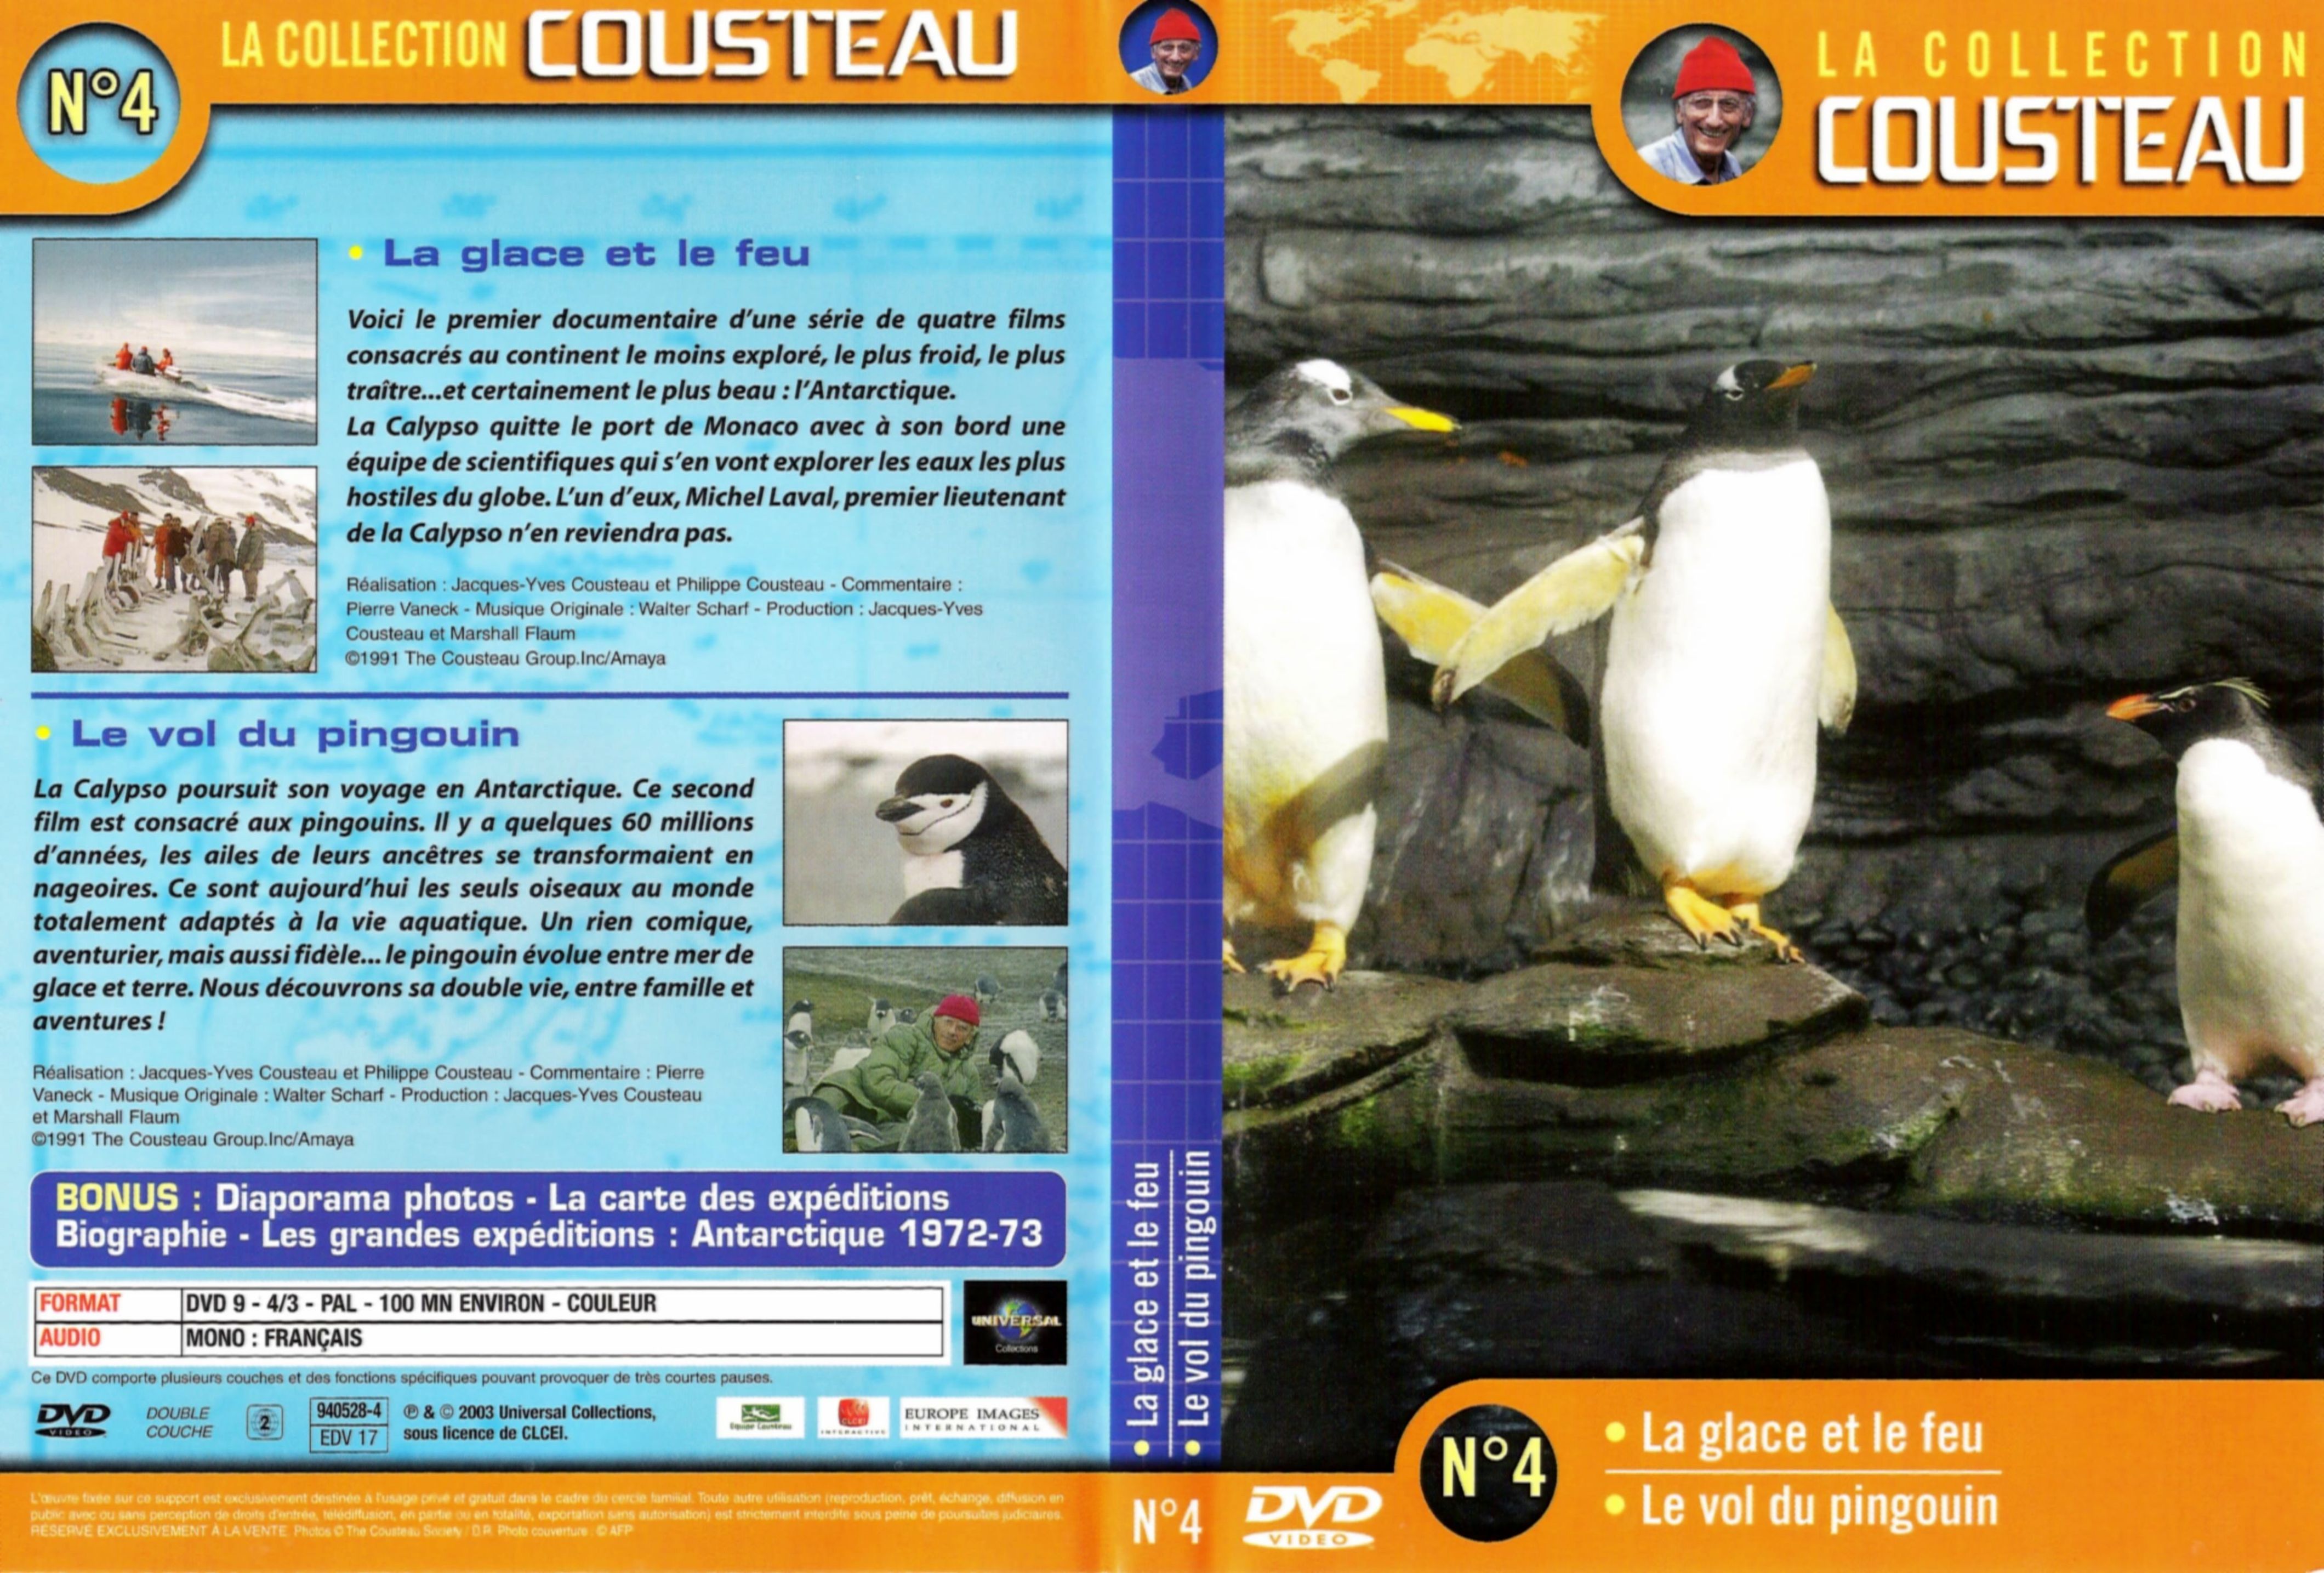 Jaquette DVD Cousteau Collection vol 04